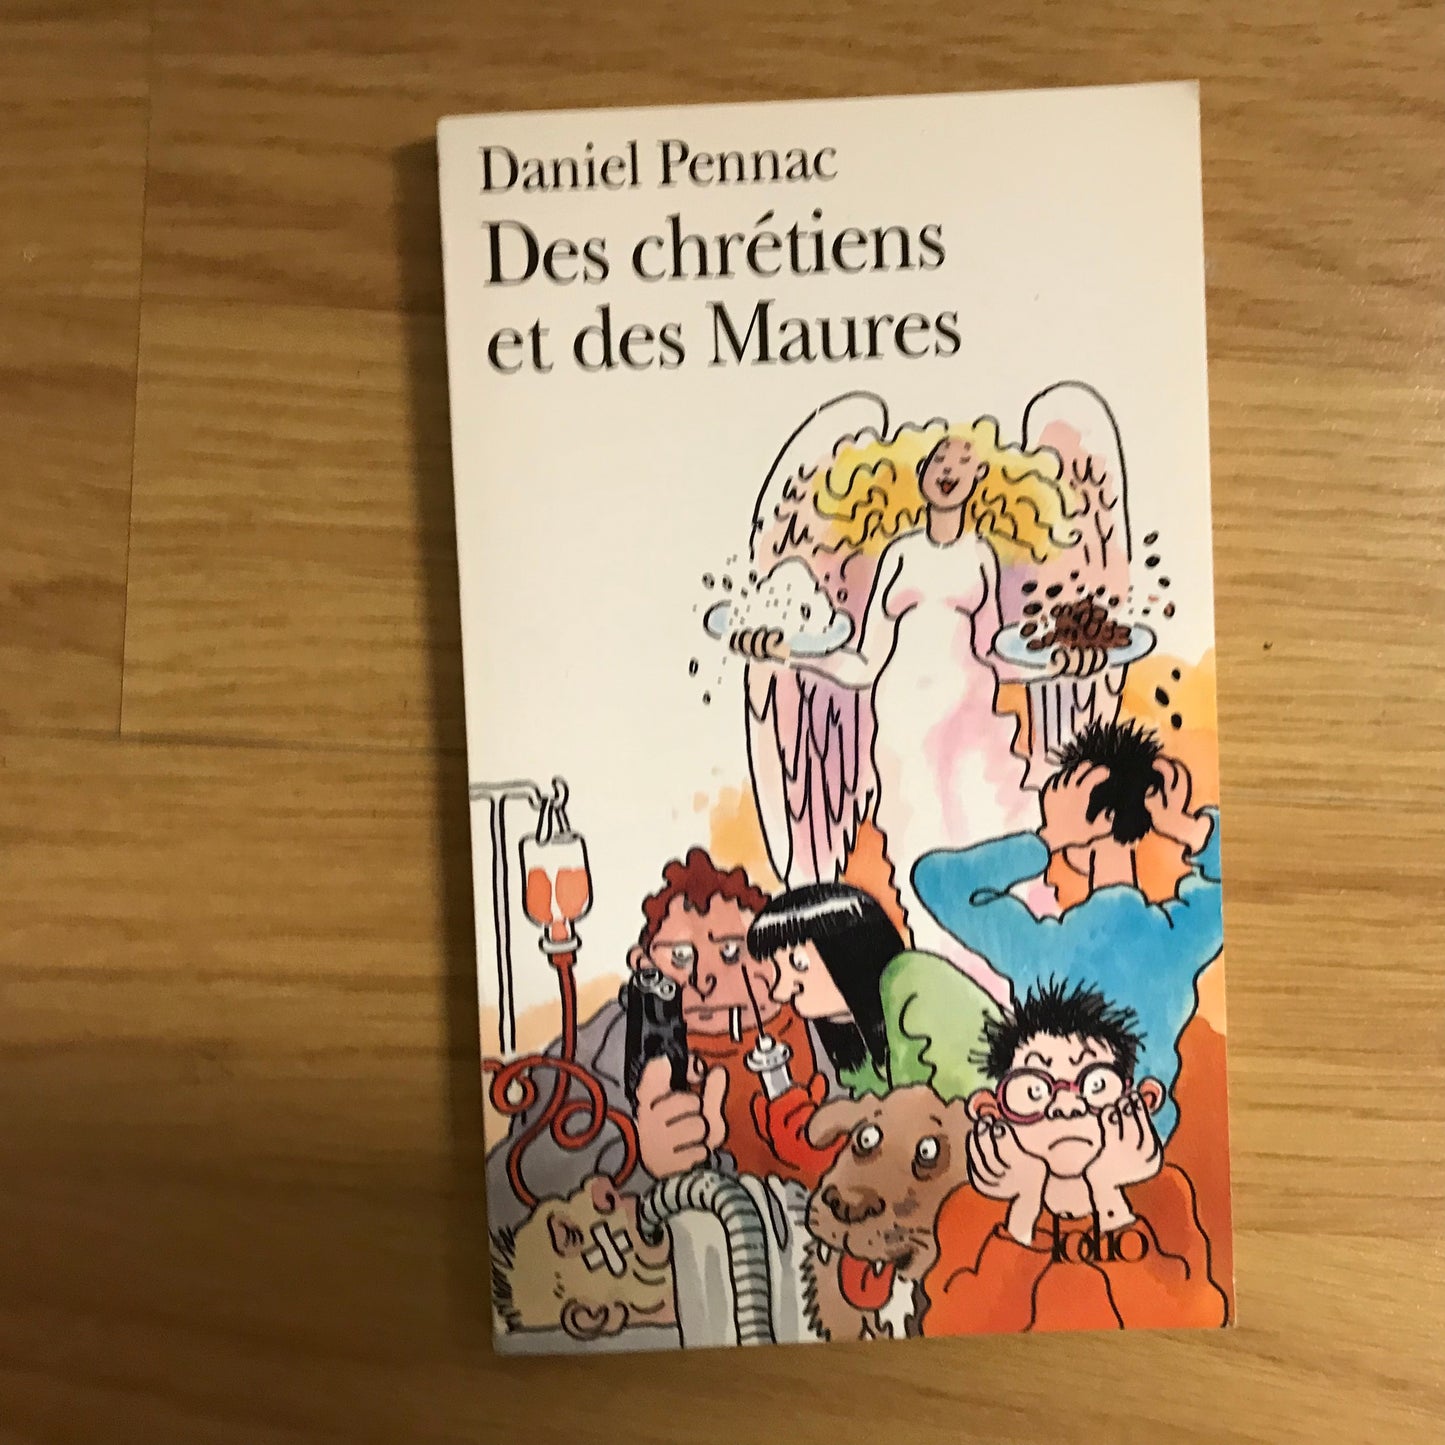 Pennac, Daniel - Des chrétiens et des Maures